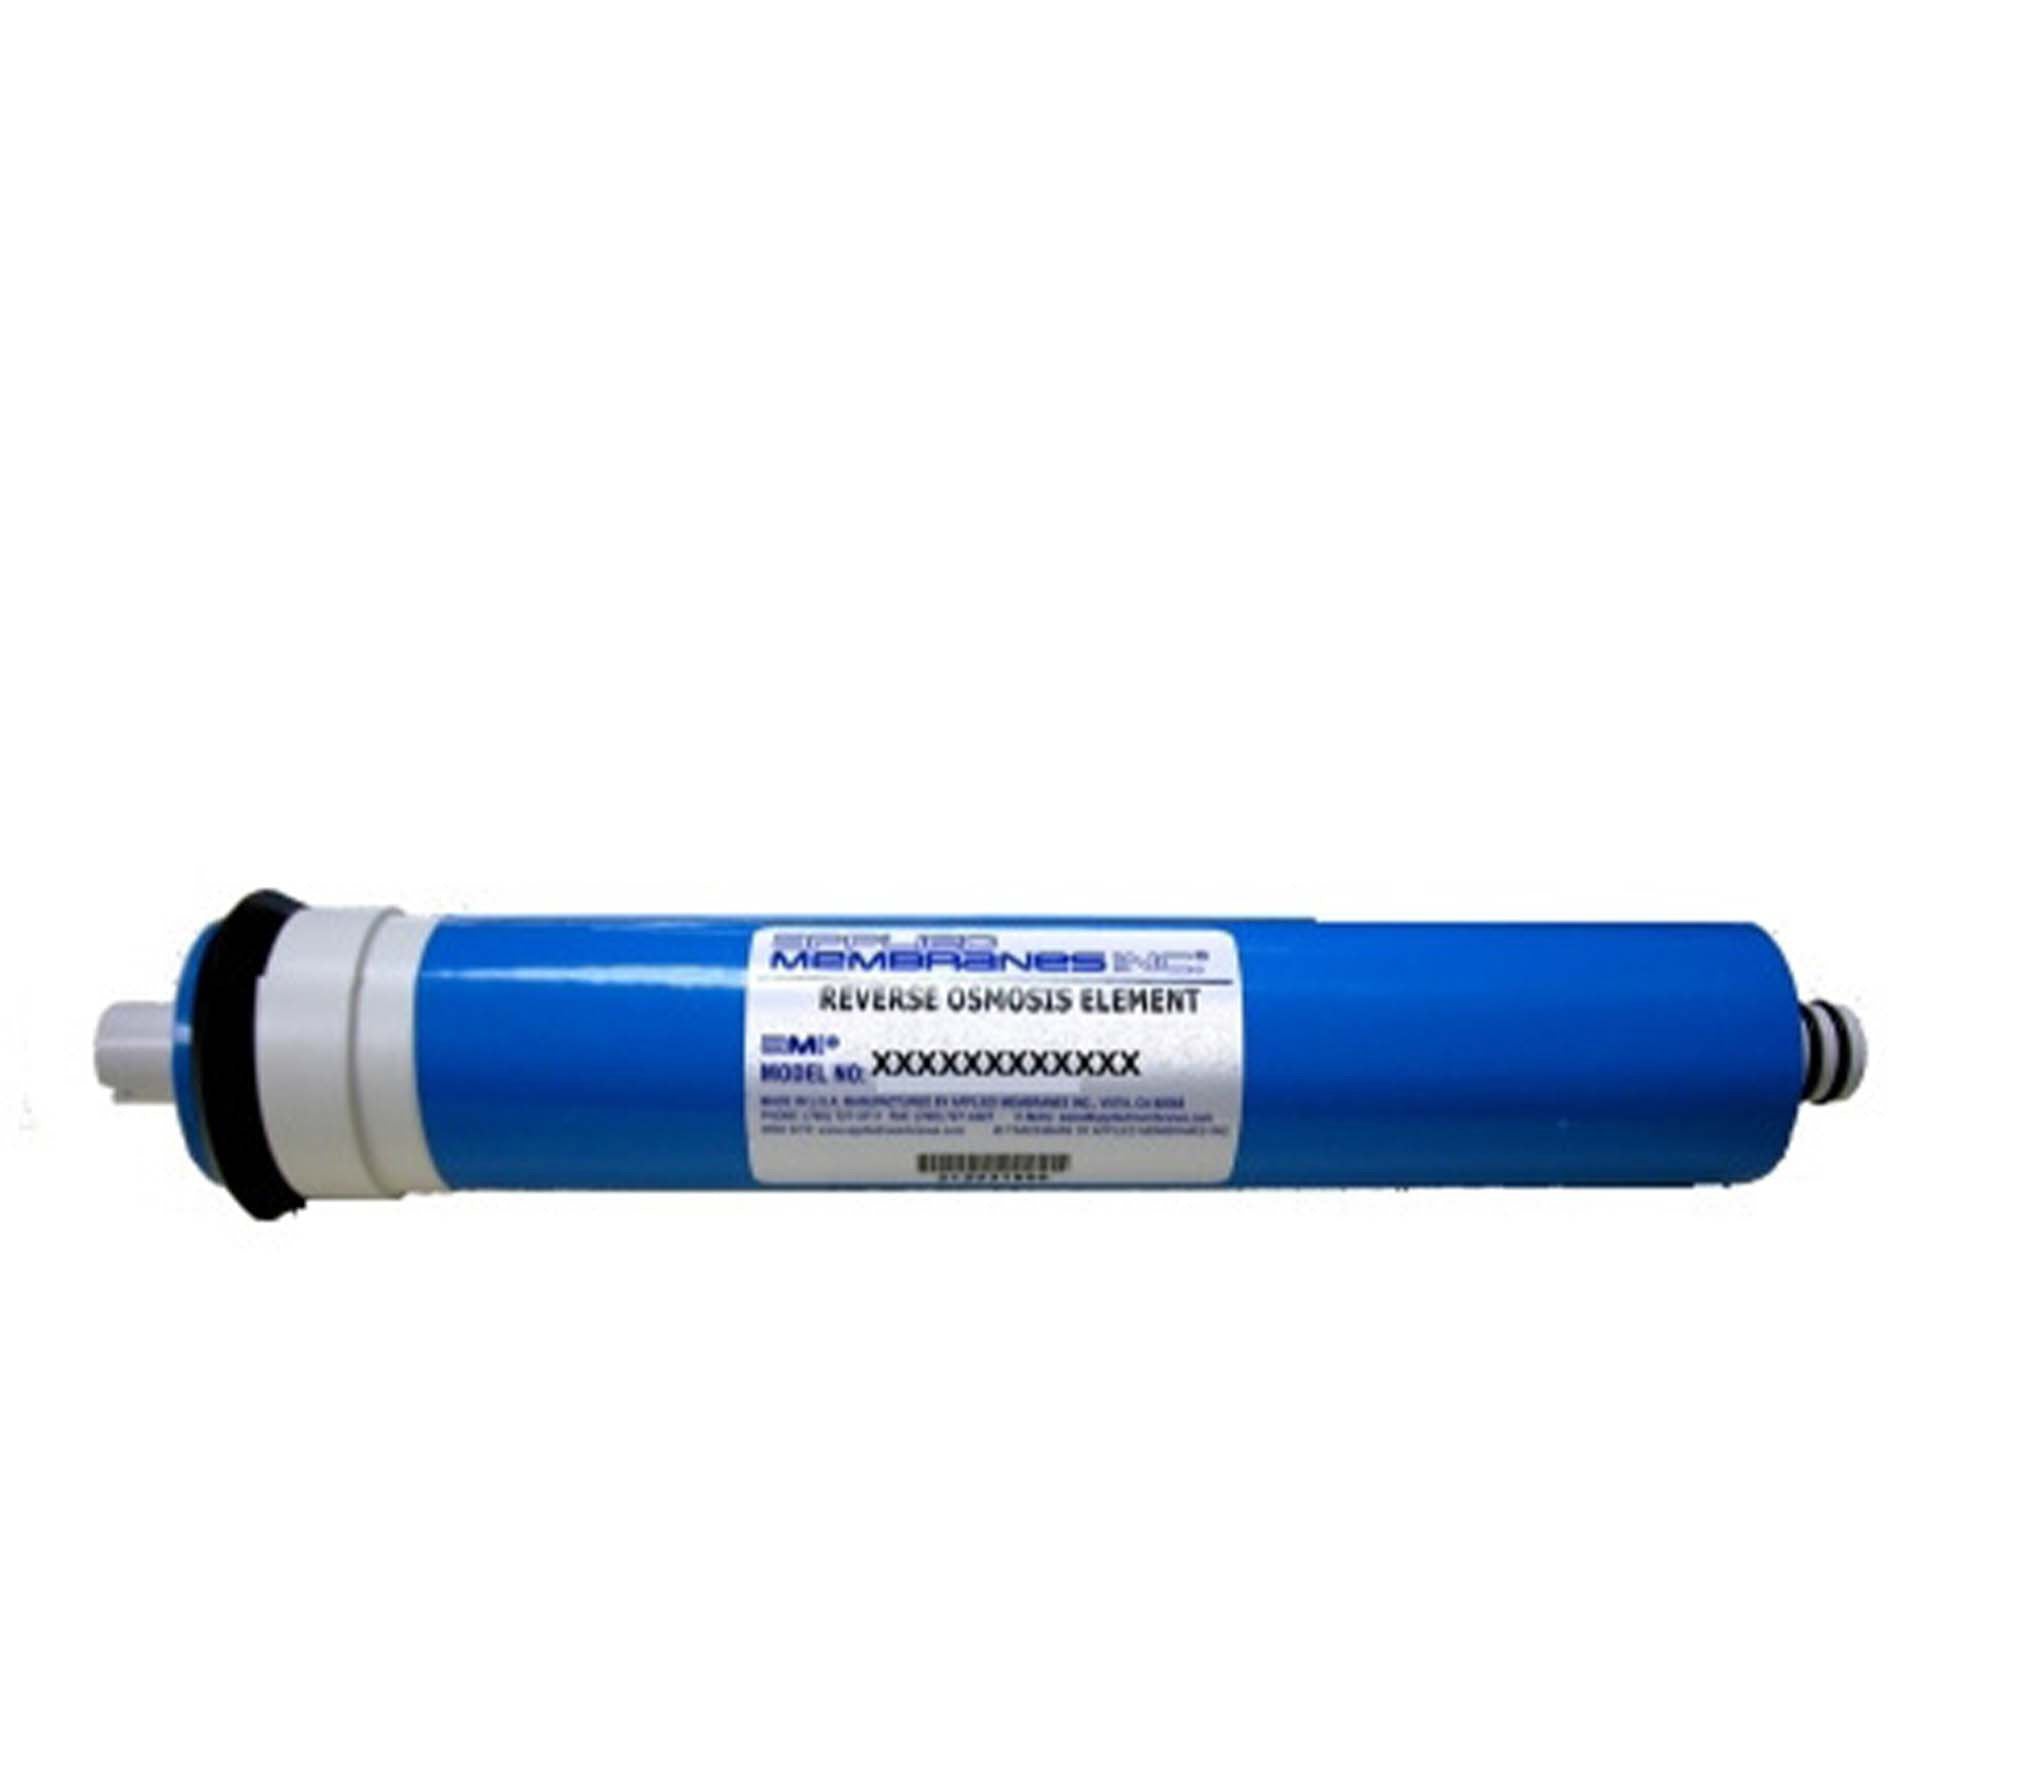 American Plumber Reverse Osmosis Membrane | 24 GPD | American Plumber Reverse Osmosis Membrane